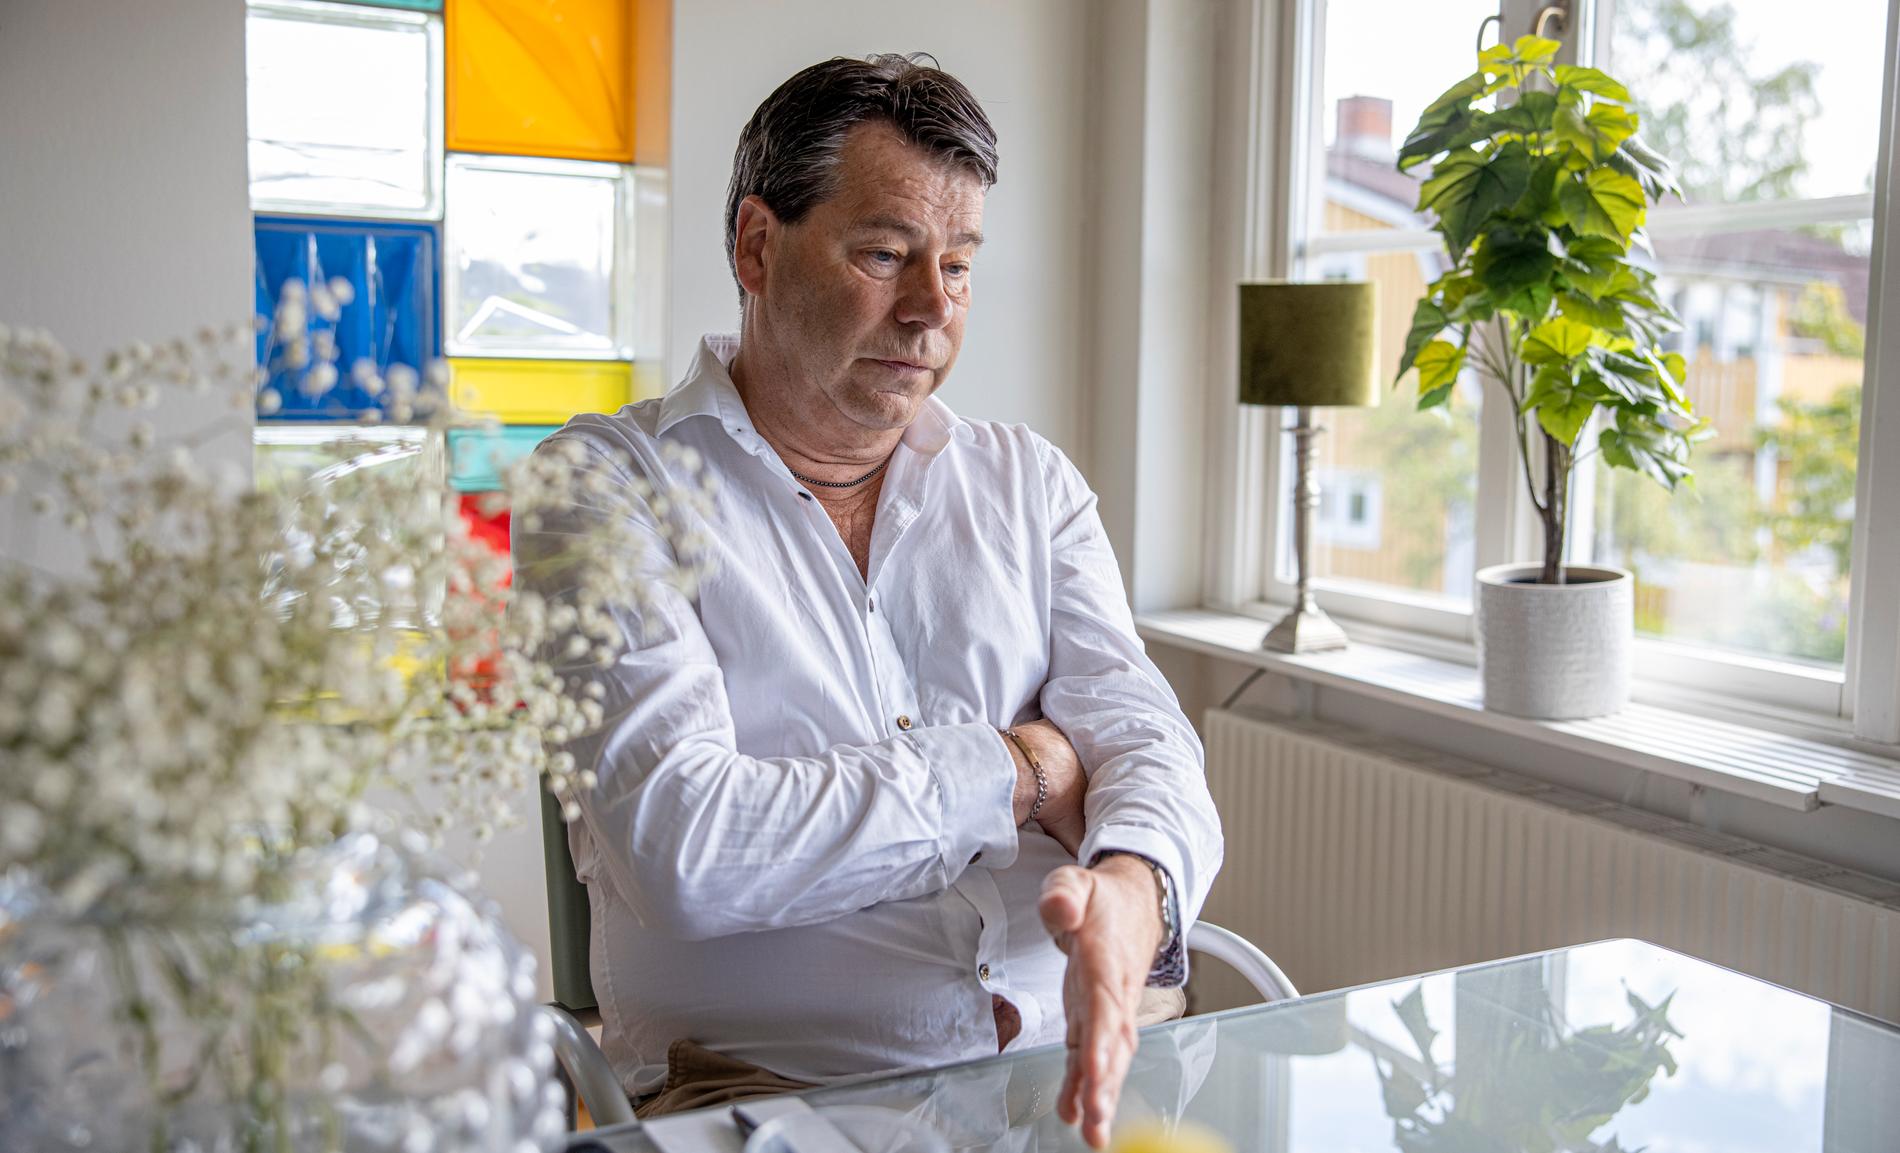 Efter 35 år i statens tjänst är chefsåklagare Stefan Lundberg sliten, sjukskriven med sömnproblem och ångest. ”Akut stressreaktion” är läkarnas diagnos.